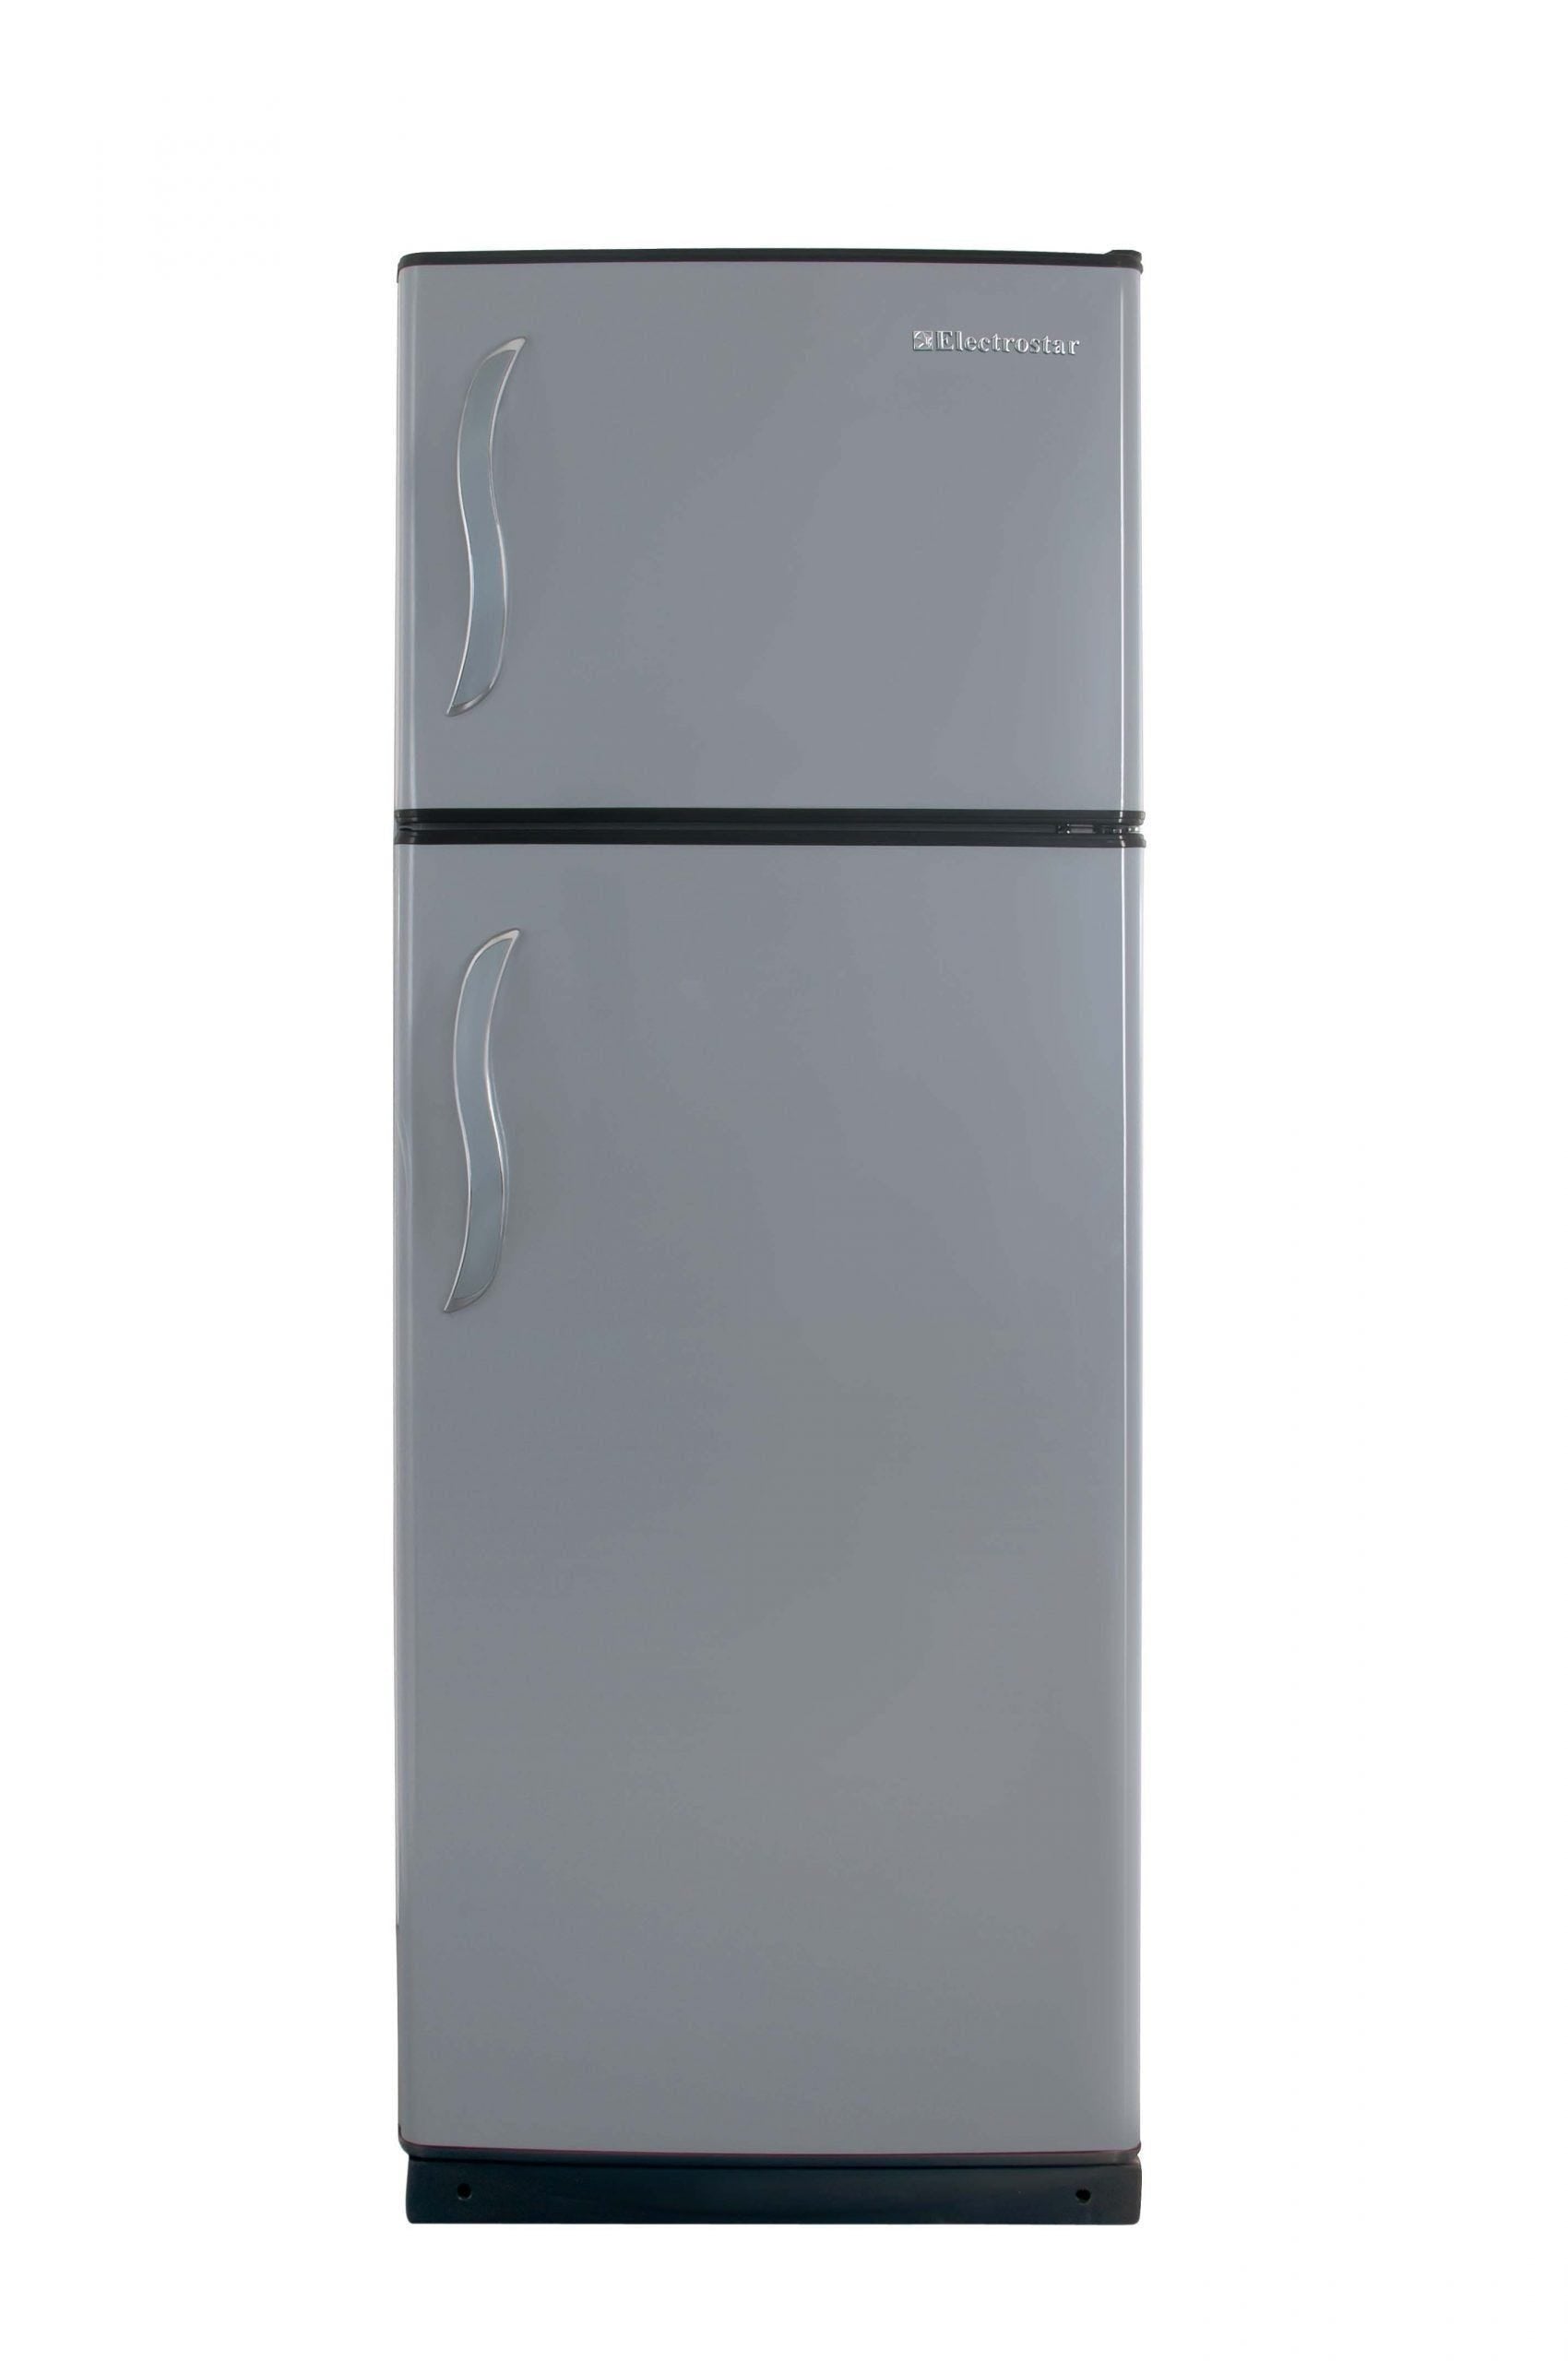 Electrostar Princess Refrigerator, Defrost, 335 Liters, 2 Doors, Silver - LR335DPN00